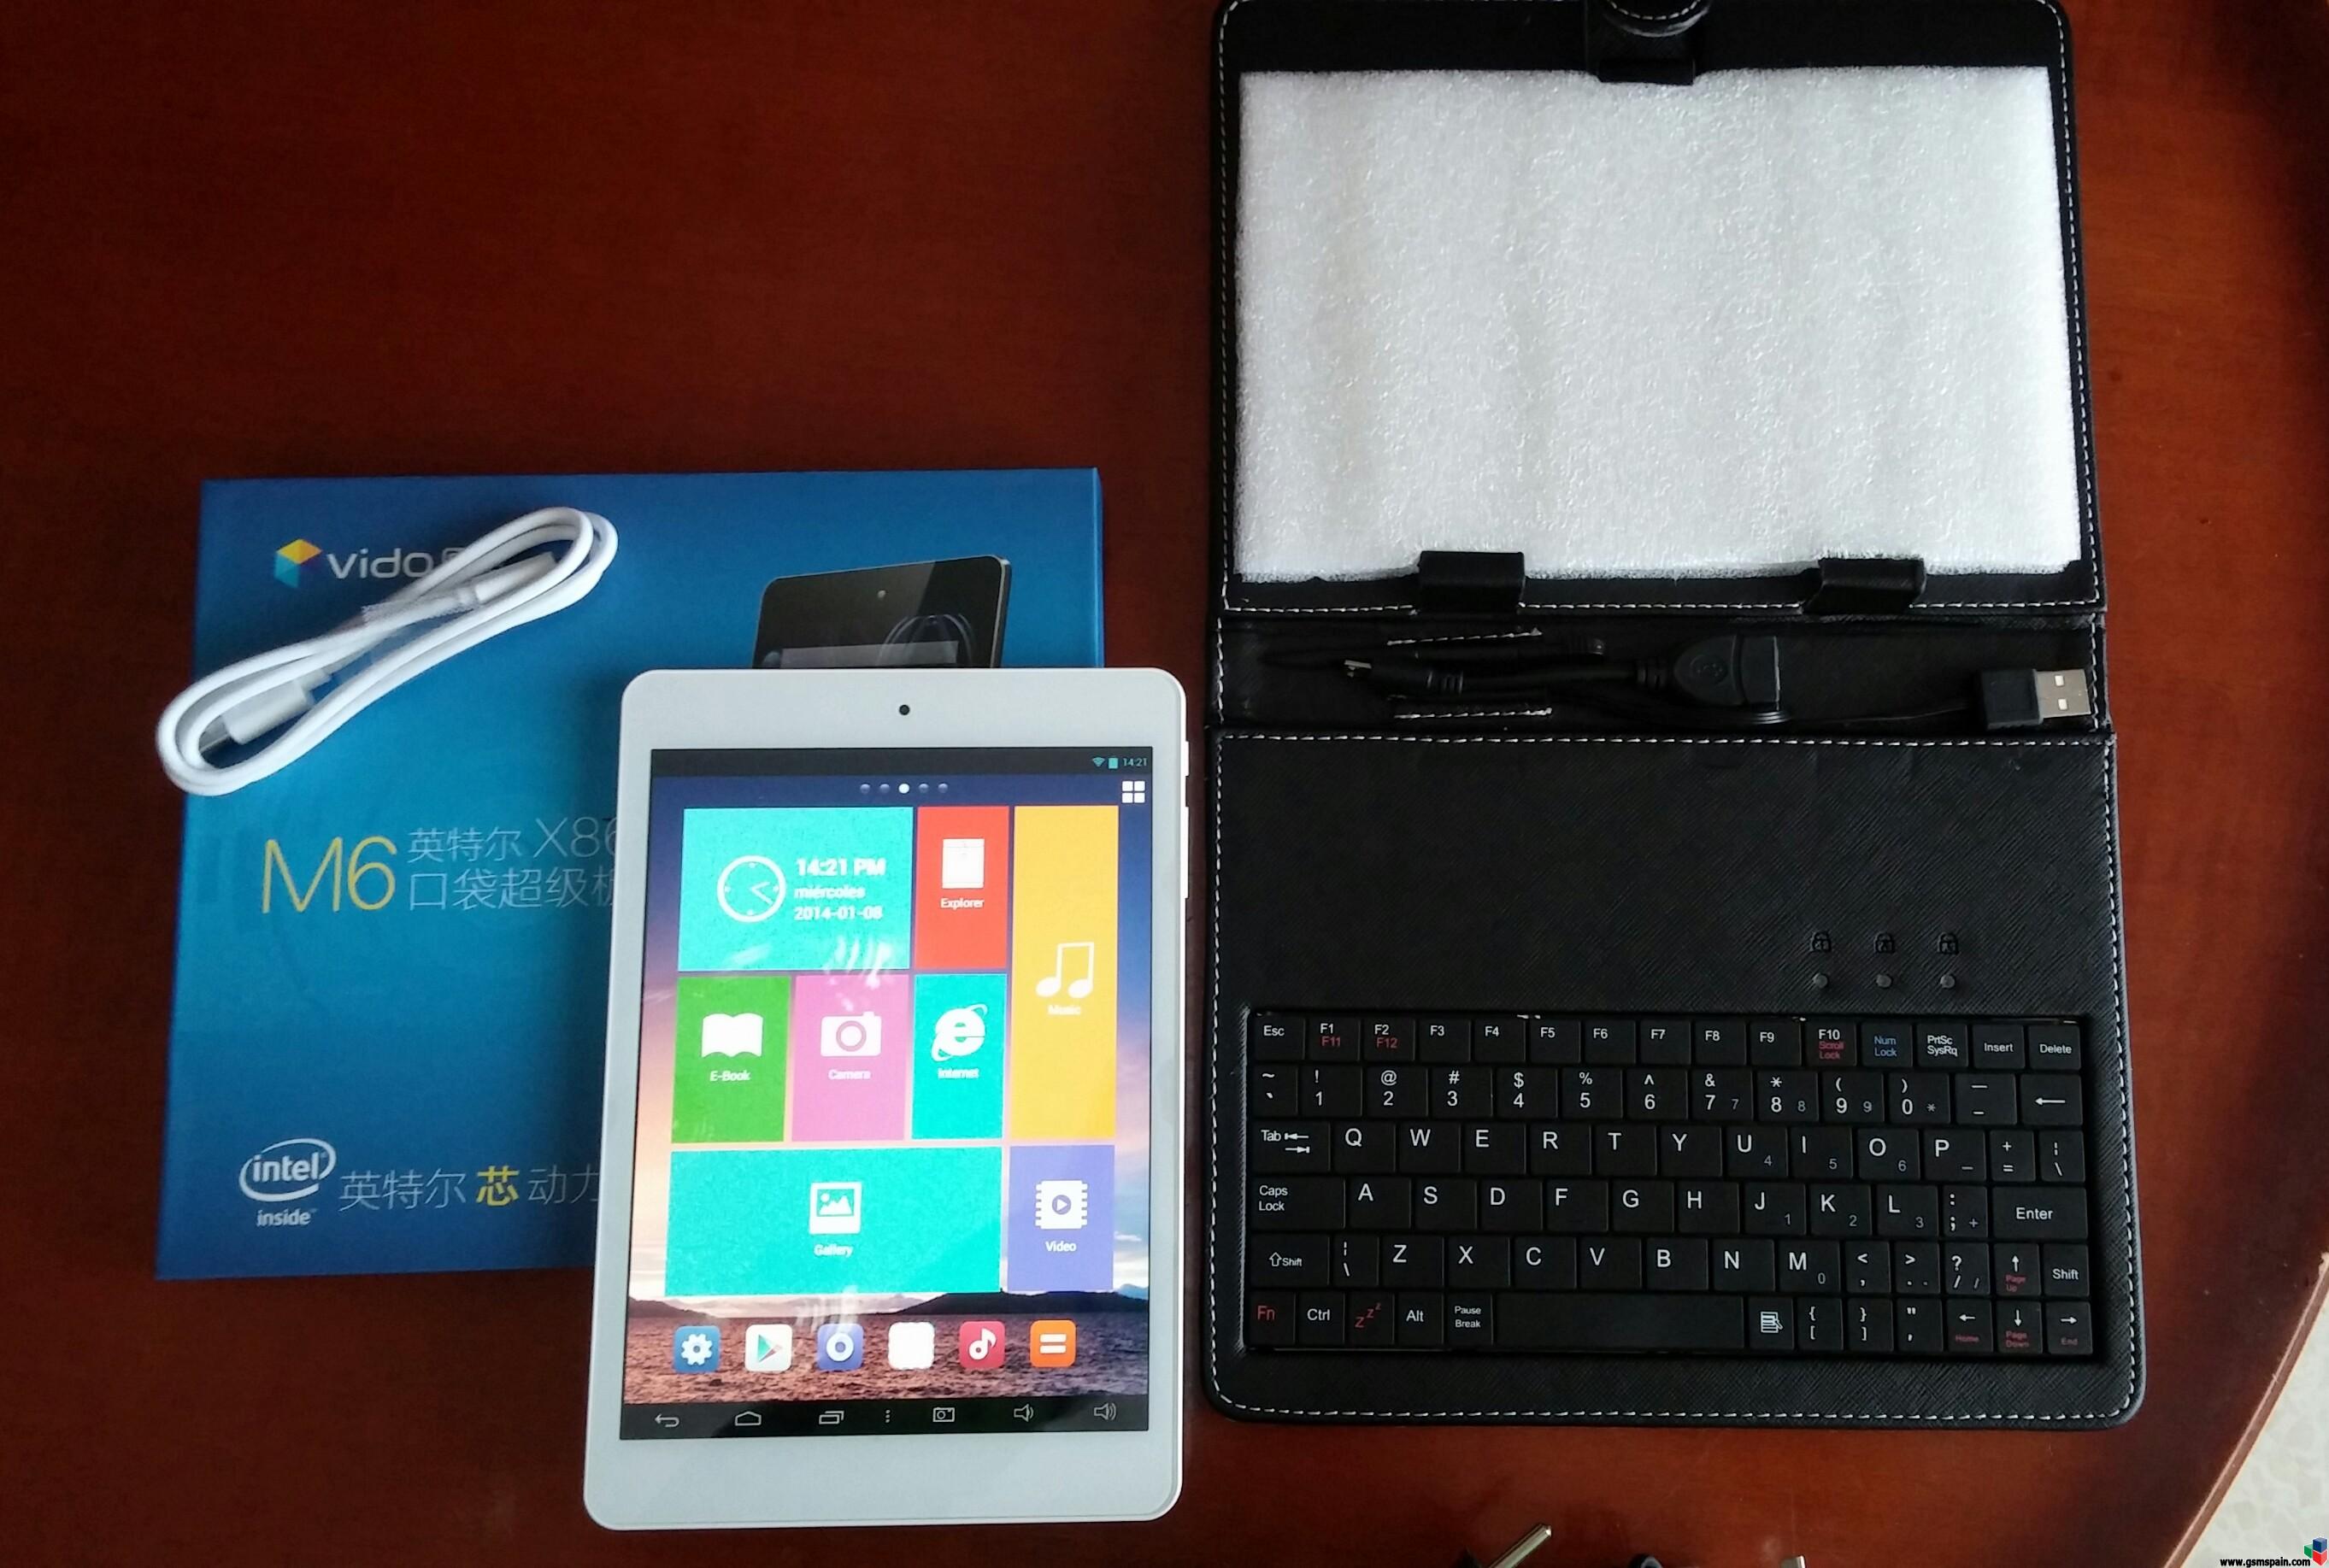 [VENDO] Tablet Yuandao Vido M6 (iPad Mini) - Intel Atom Z2580 - Buetooth - GPS